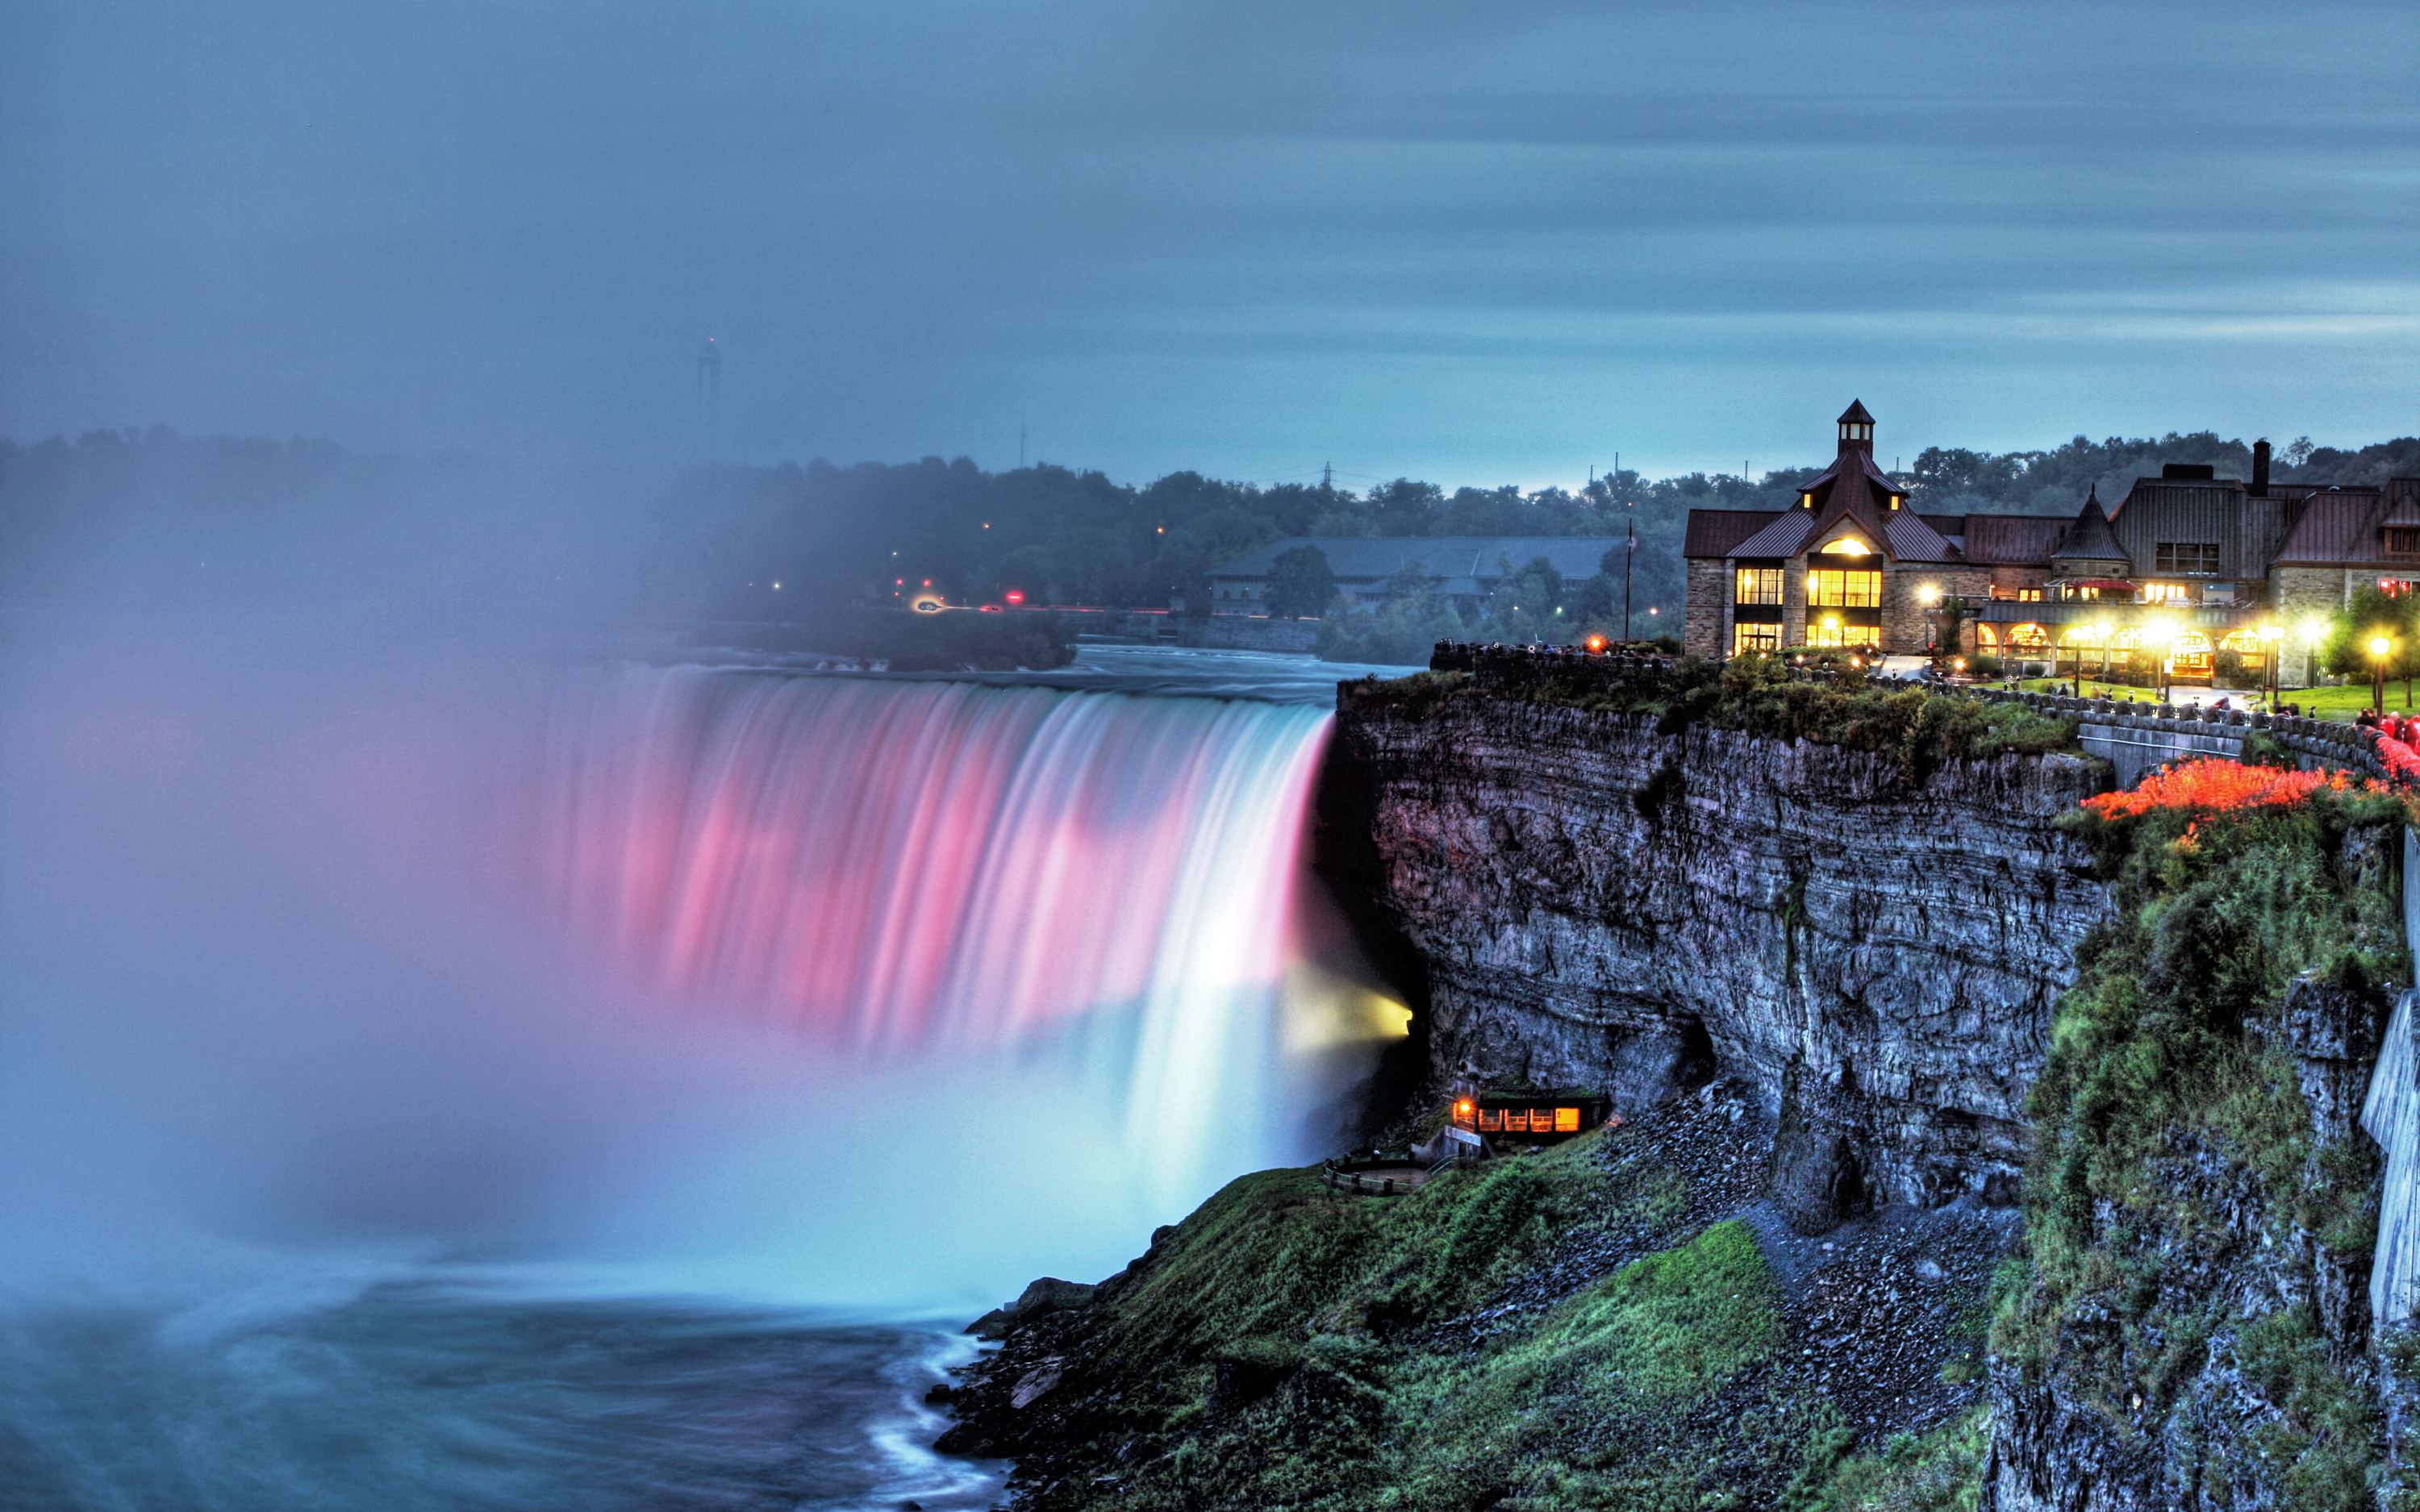 尼亚加拉大瀑布,位于加拿大安大略省与美国纽约州交界处,是世界上第一